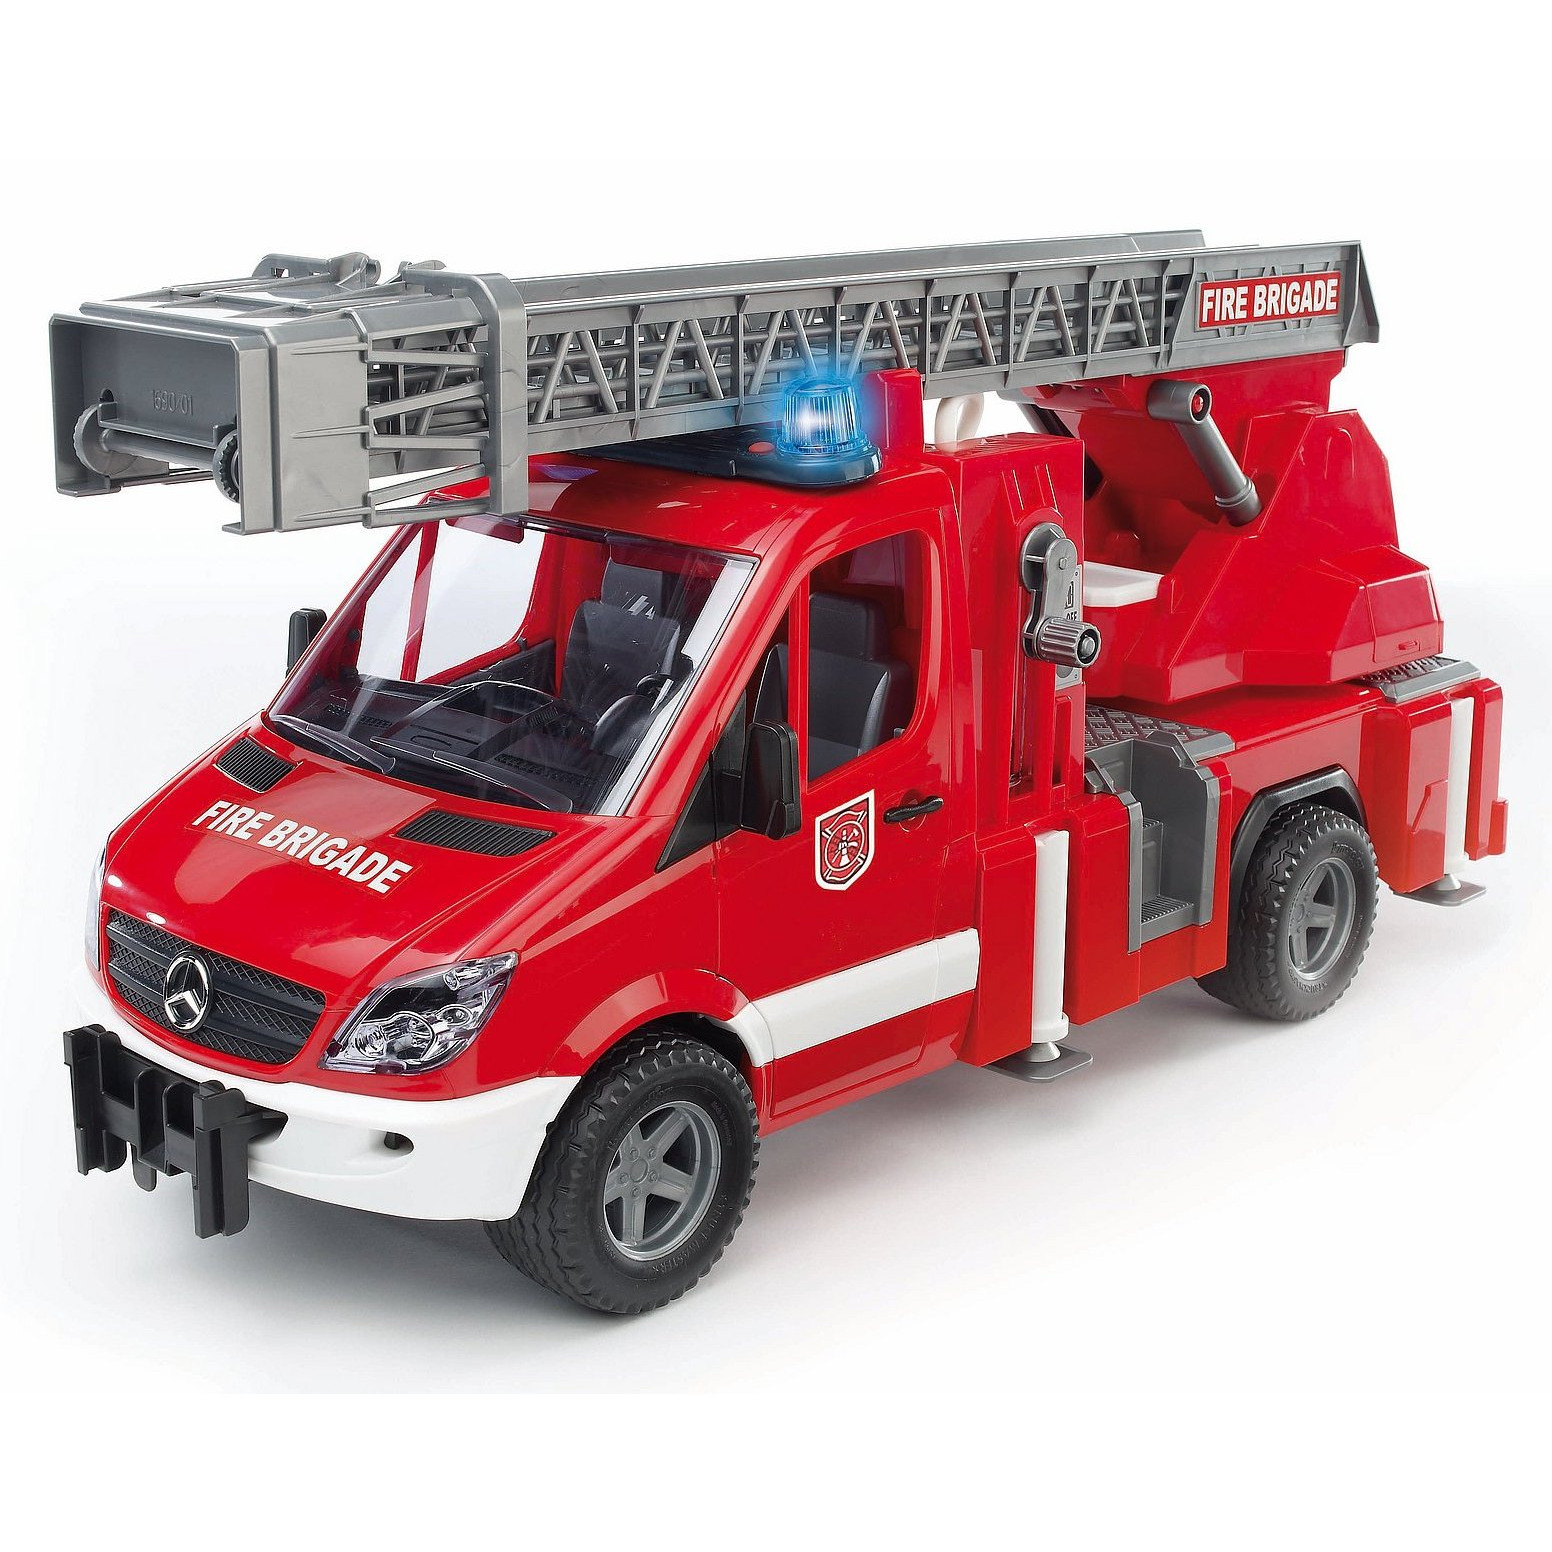 Купить игрушку пожарный. Пожарный автомобиль Bruder Mercedes-Benz Sprinter (02-532) 1:16 45 см. Пожарная машина Bruder Mercedes-Benz Sprinter. Брудер пожарная машина Мерседес. Боудер пожарная машинка.